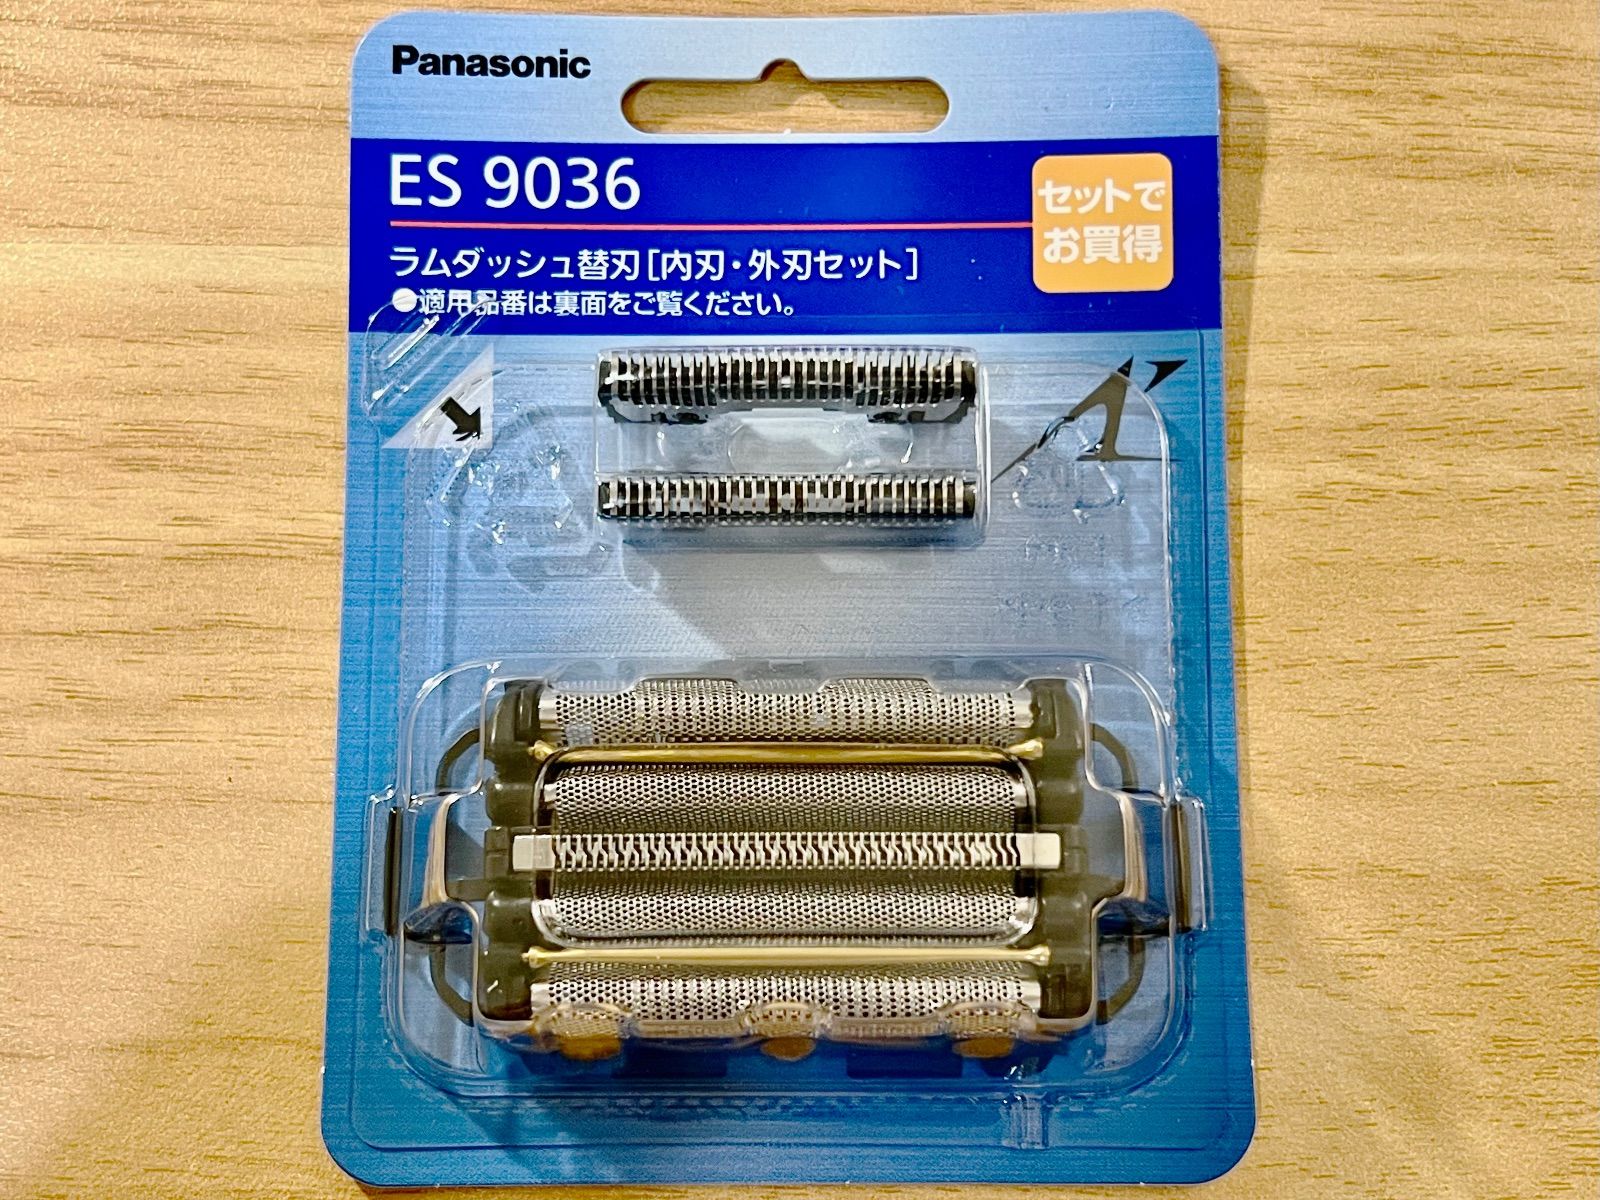 メンズシェーバー 替刃 セット刃 ES9036(1コ入)